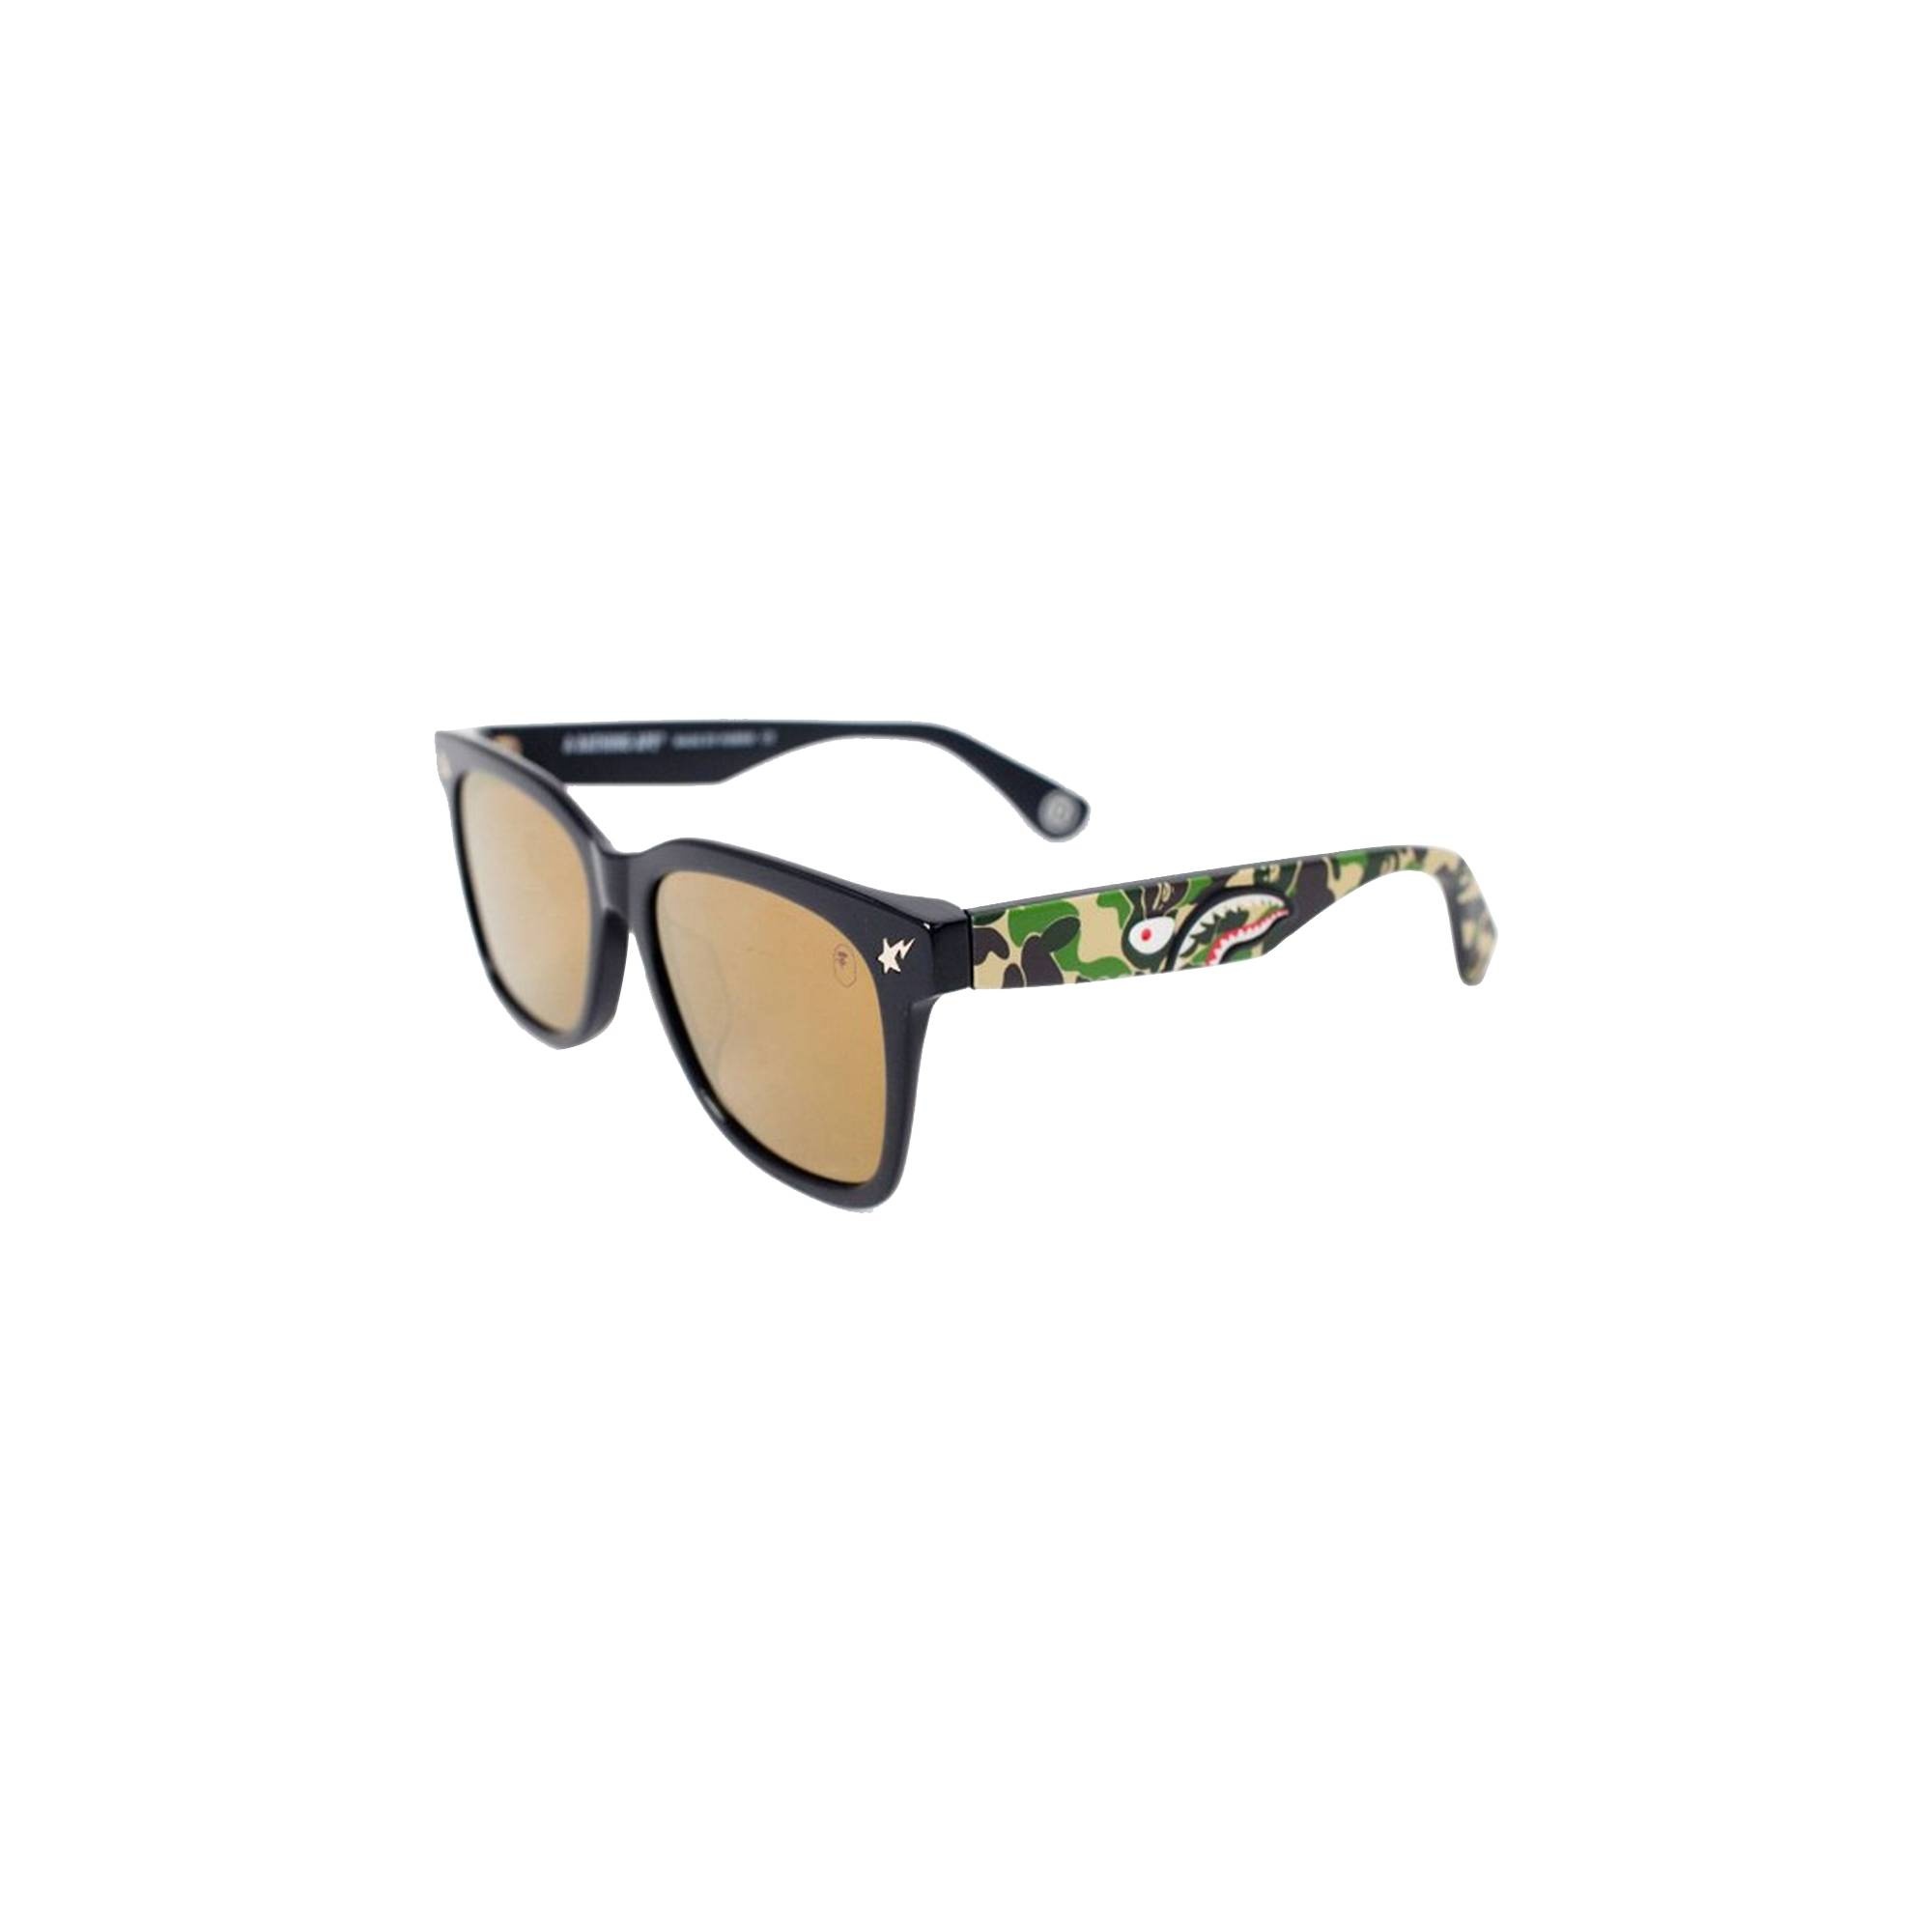 BAPE Sunglasses 'Black/Camo' - 1